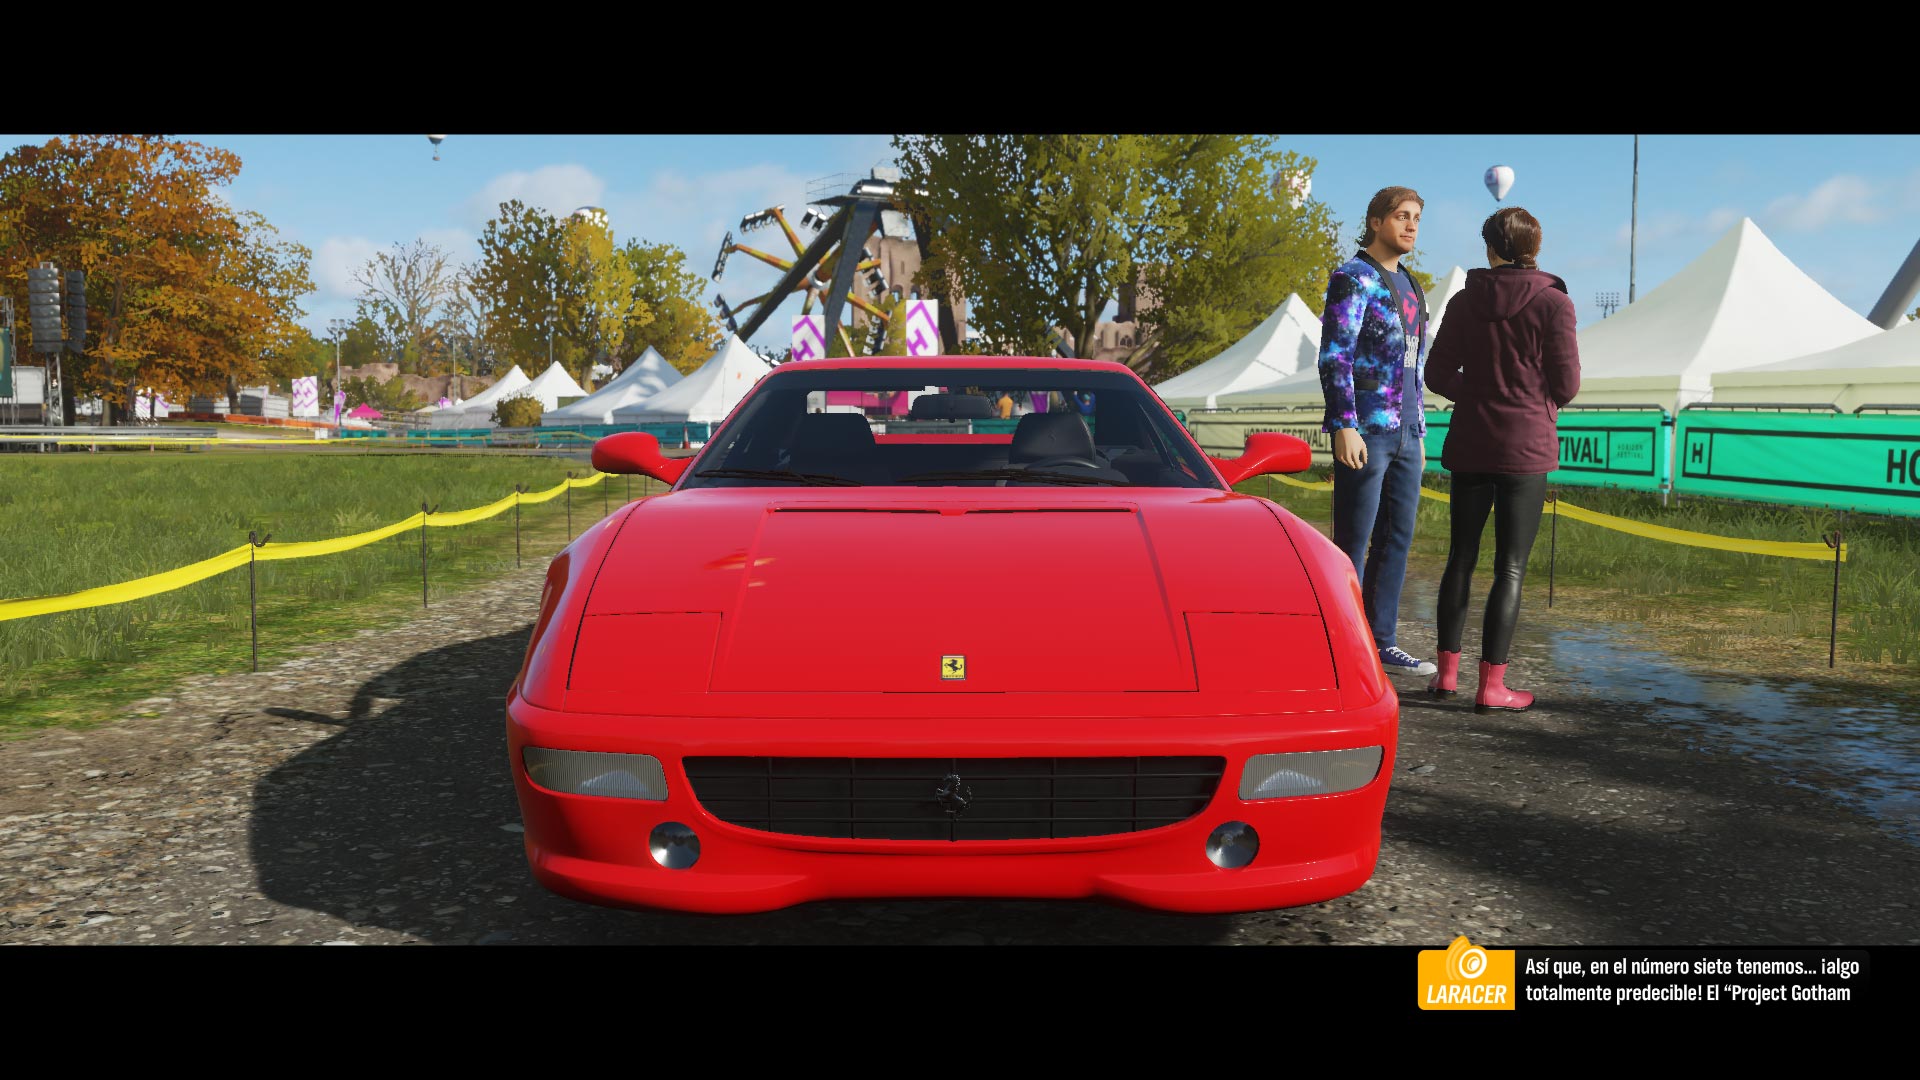 Análisis de Forza Horizon 4 para Xbox One y Windows 10 - HobbyConsolas